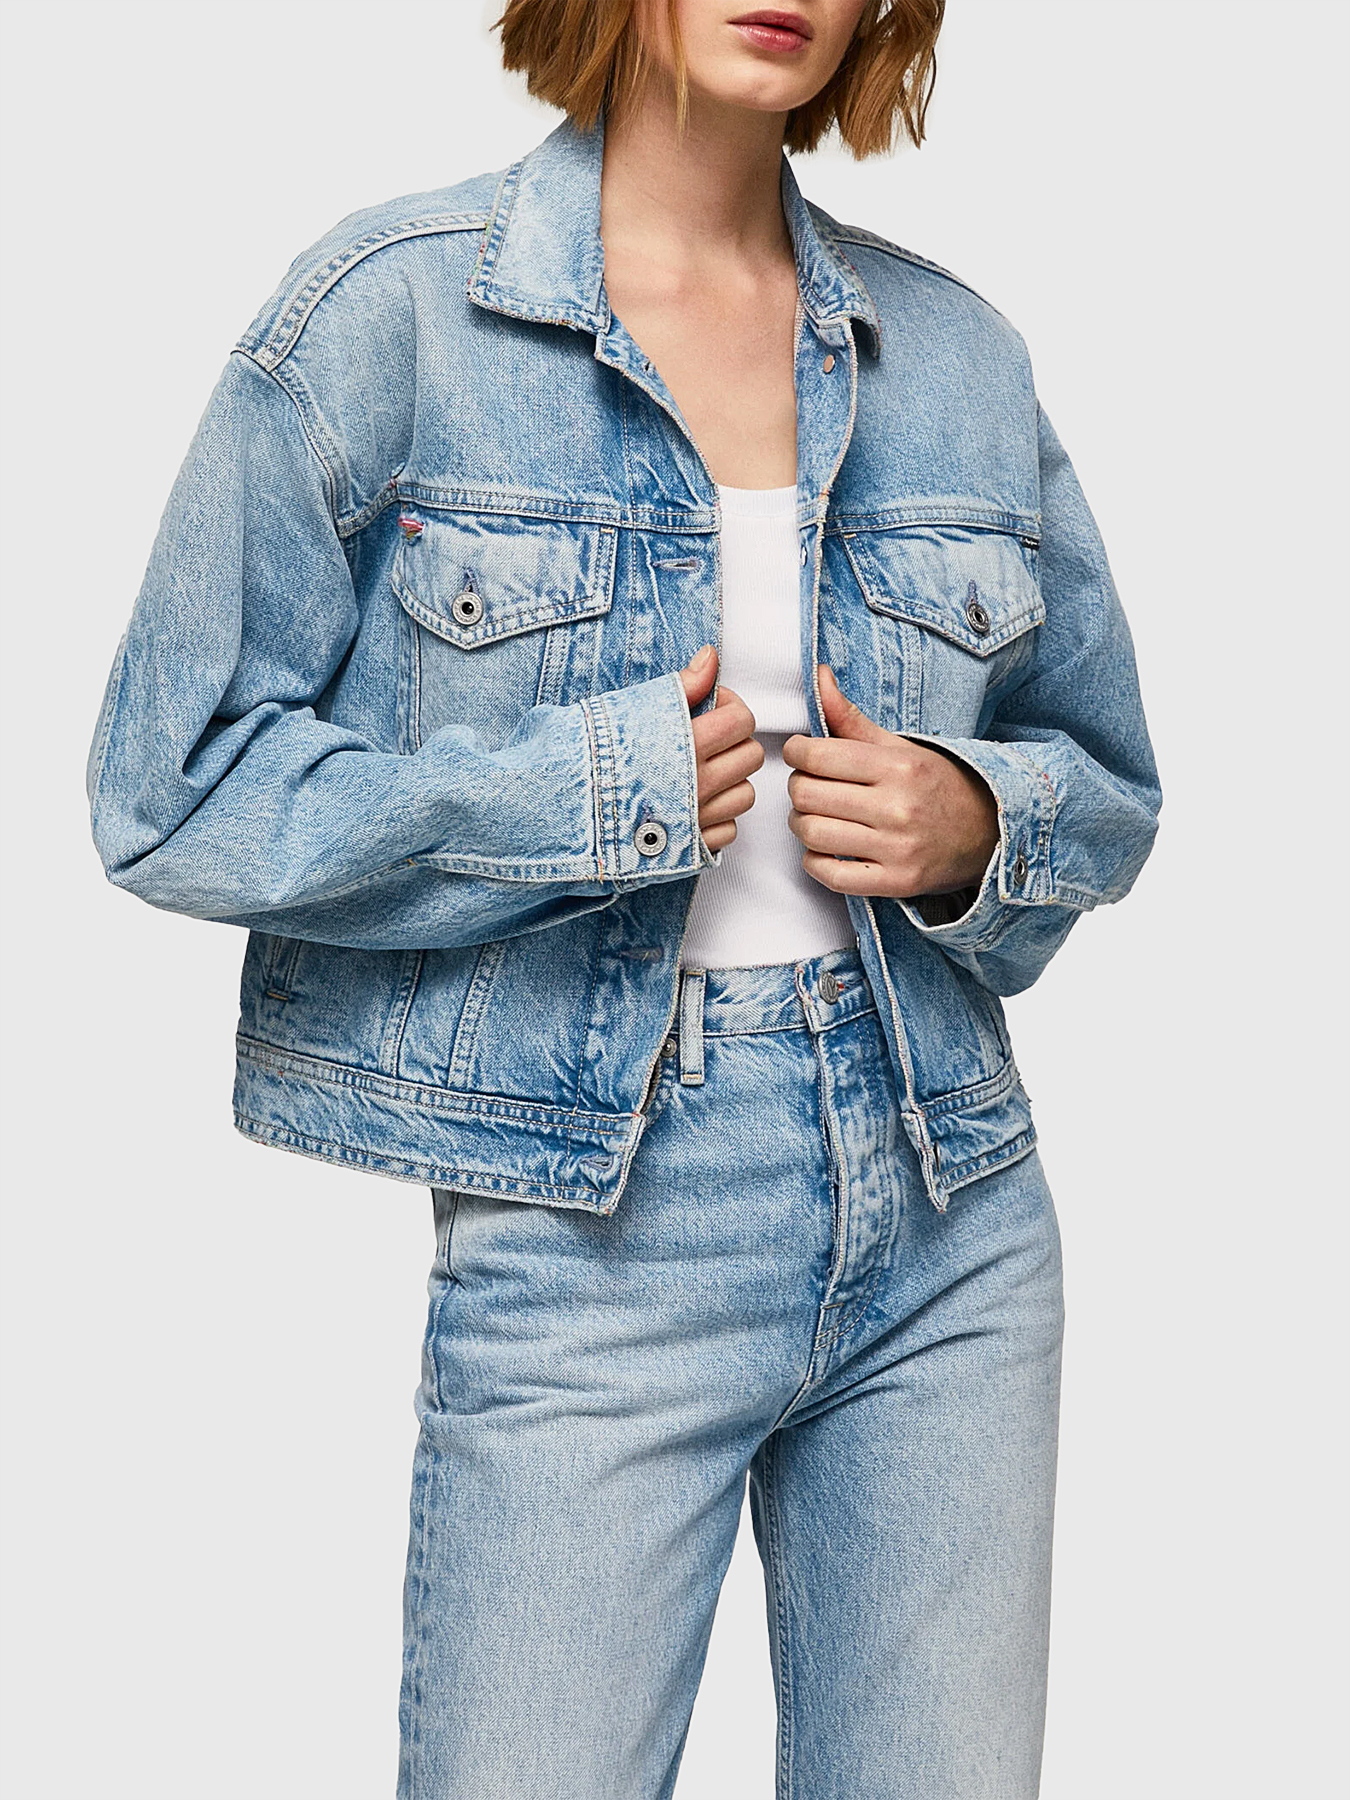 Pepe Jeans Thrift Denim Jacket | ASOS-pokeht.vn